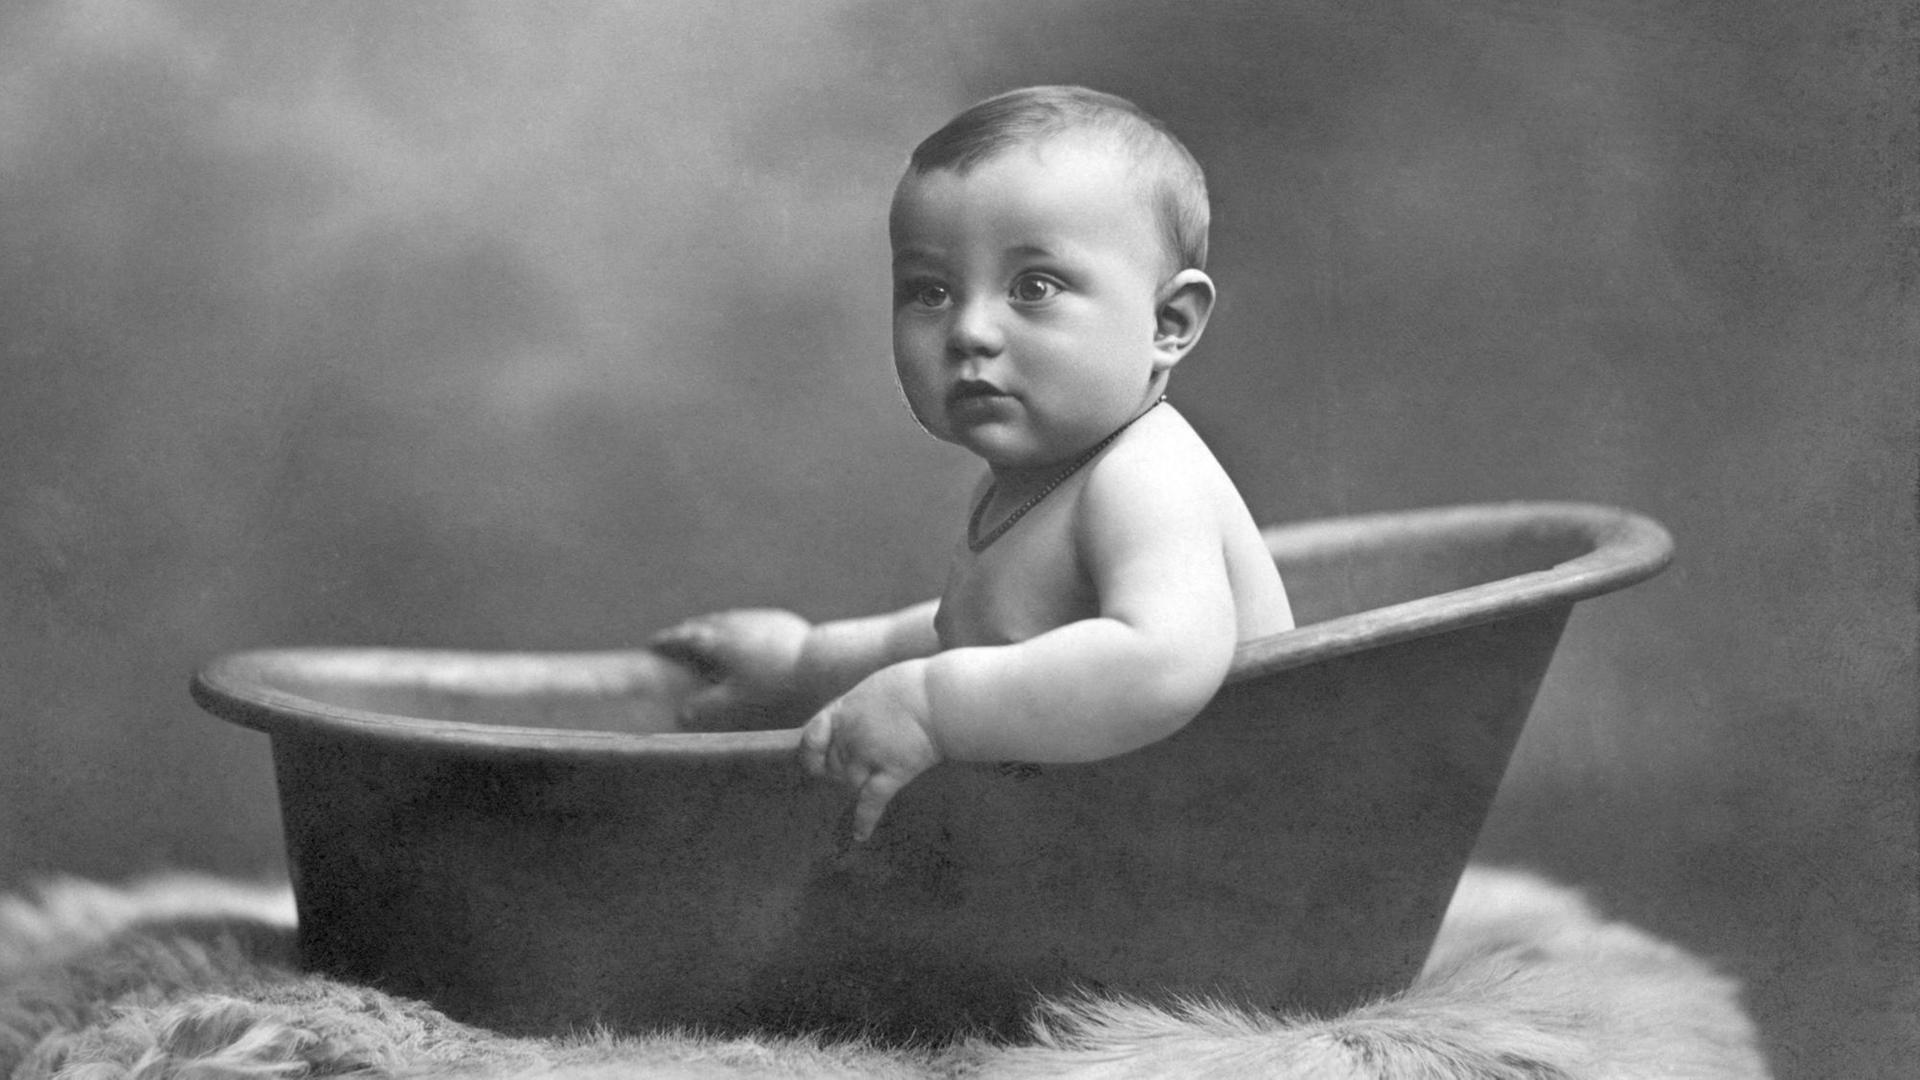 Historische Aufnahme: Baby in der Badewanne, circa 1915